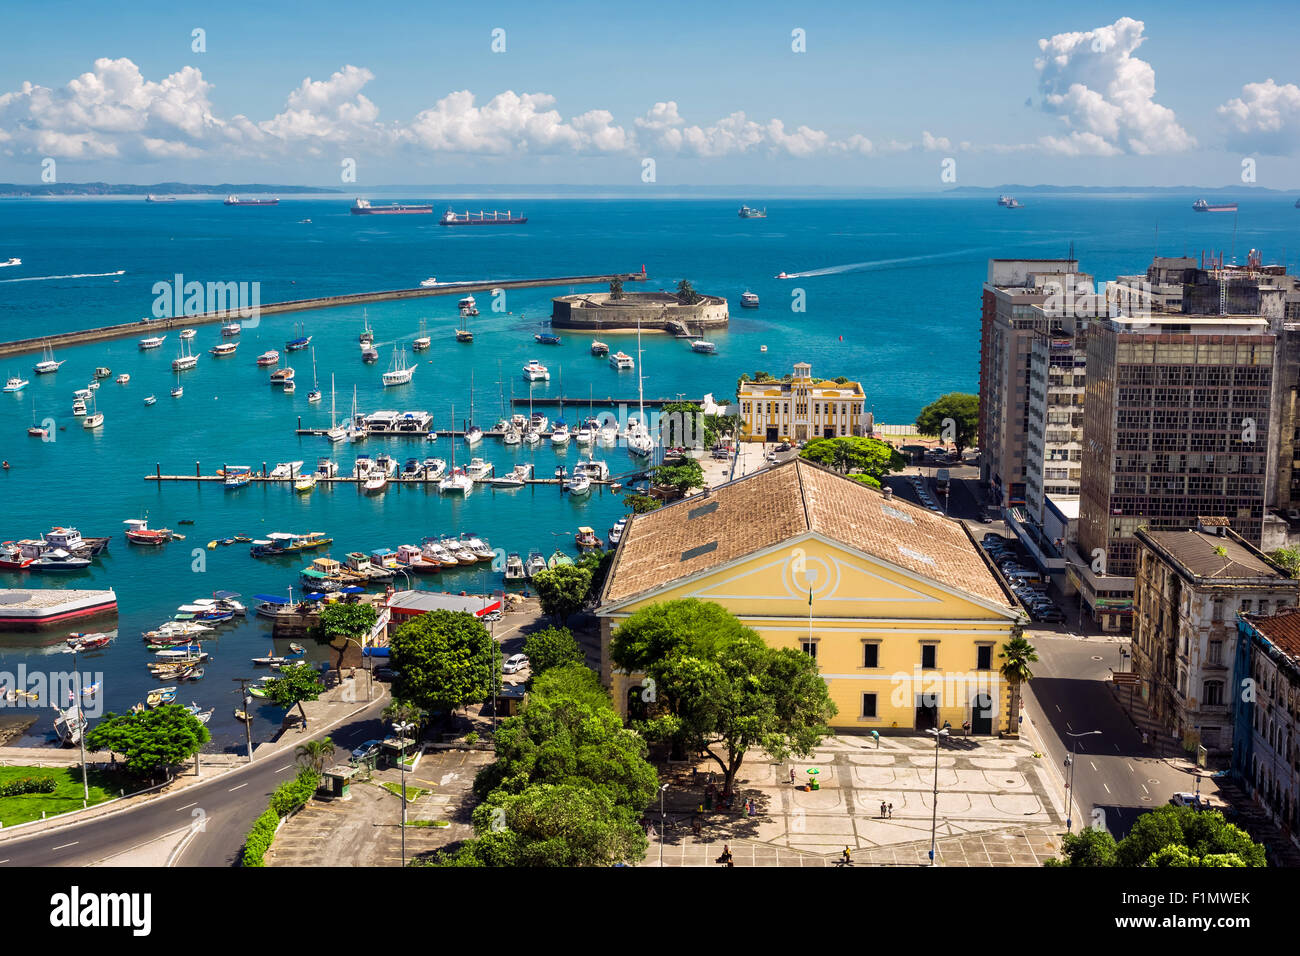 View of Baia de Todos os Santos (Bay of All Saints) in Salvador, Bahia, Brazil. Stock Photo